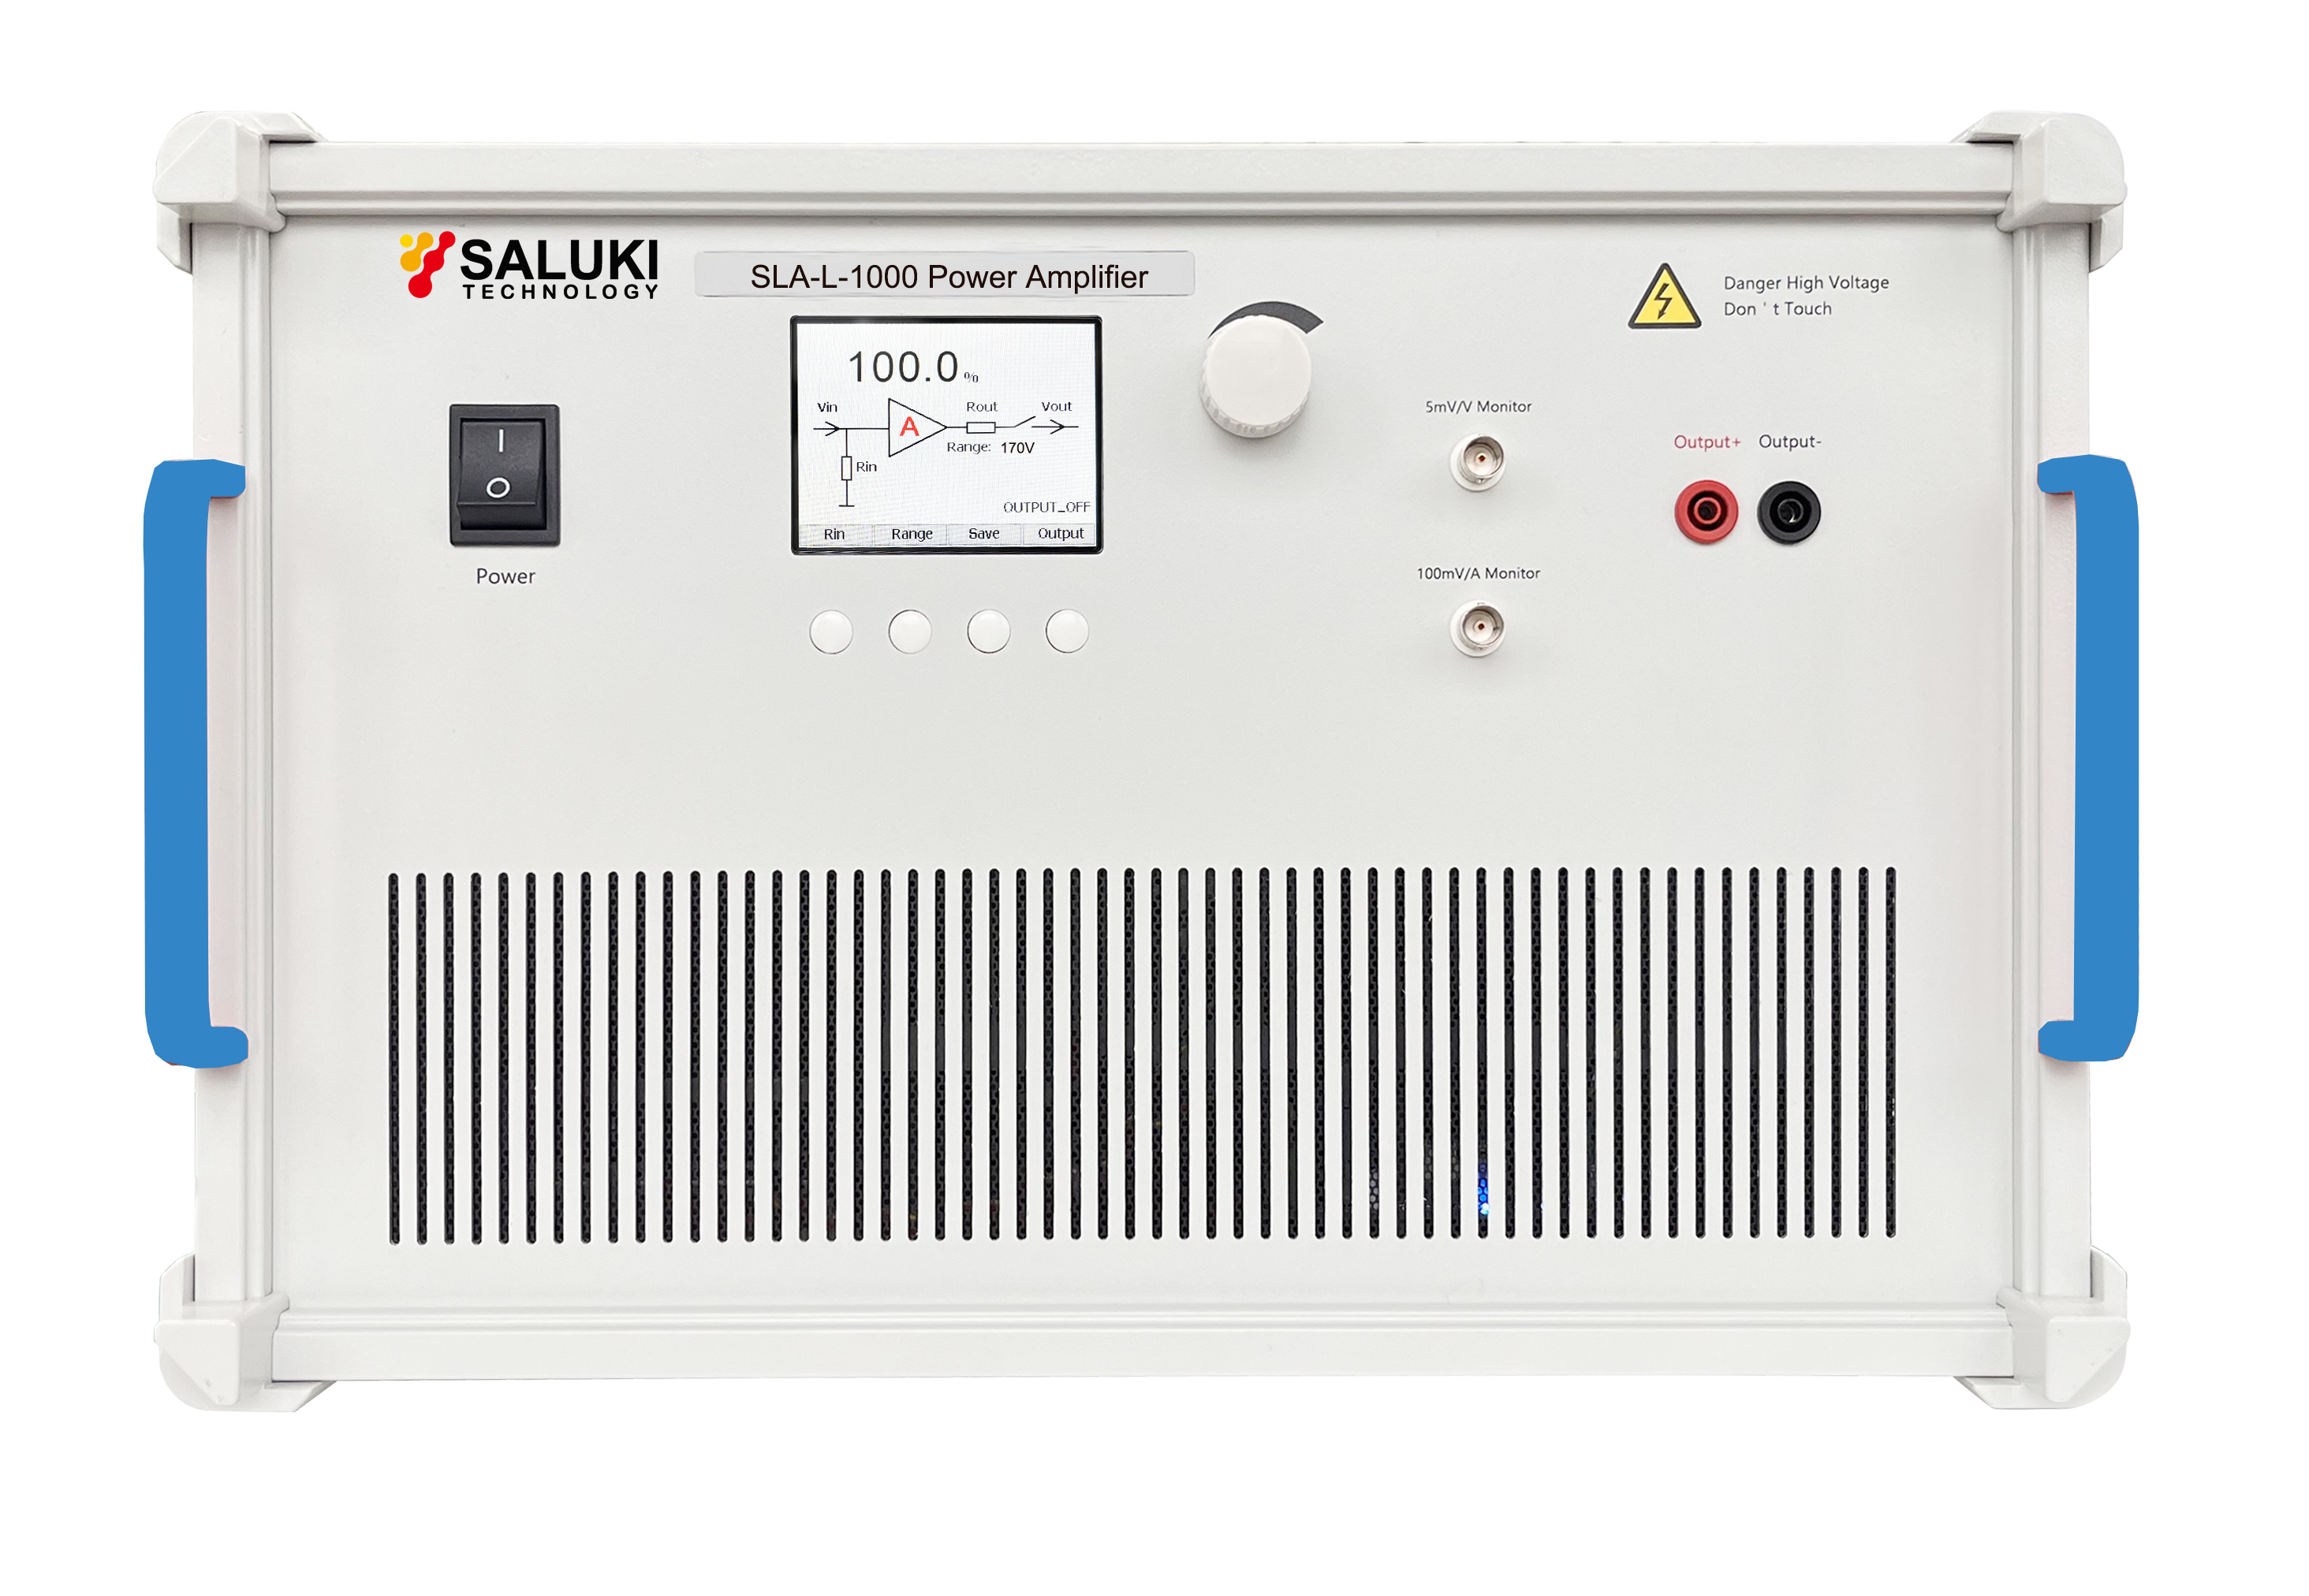 SLA-L-1000 Power Amplifier